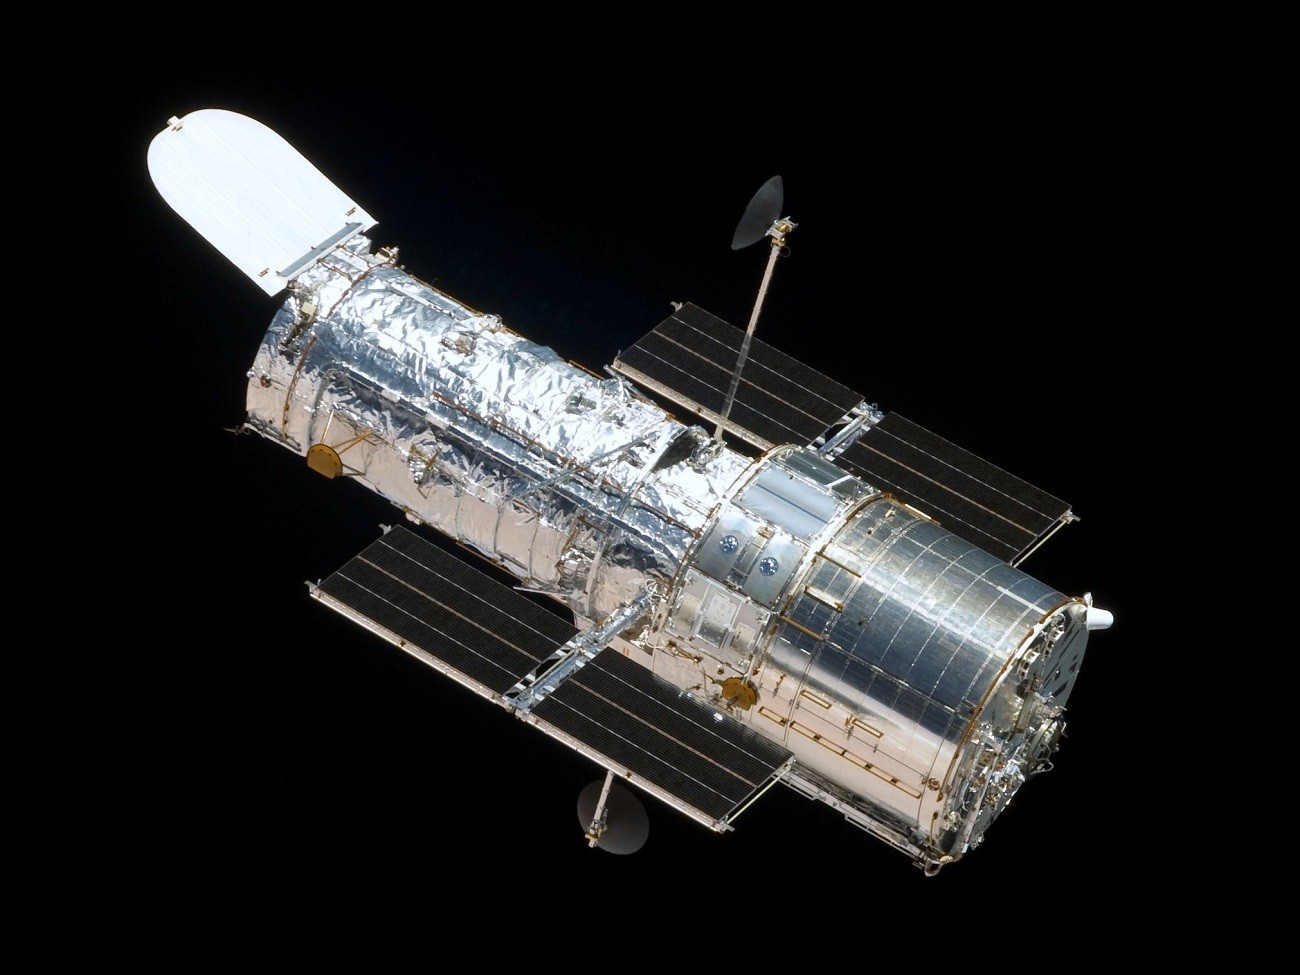 Kosmiczny Teleskop Hubble’a nadal nie działa, a NASA nie może tego wyjaśnić